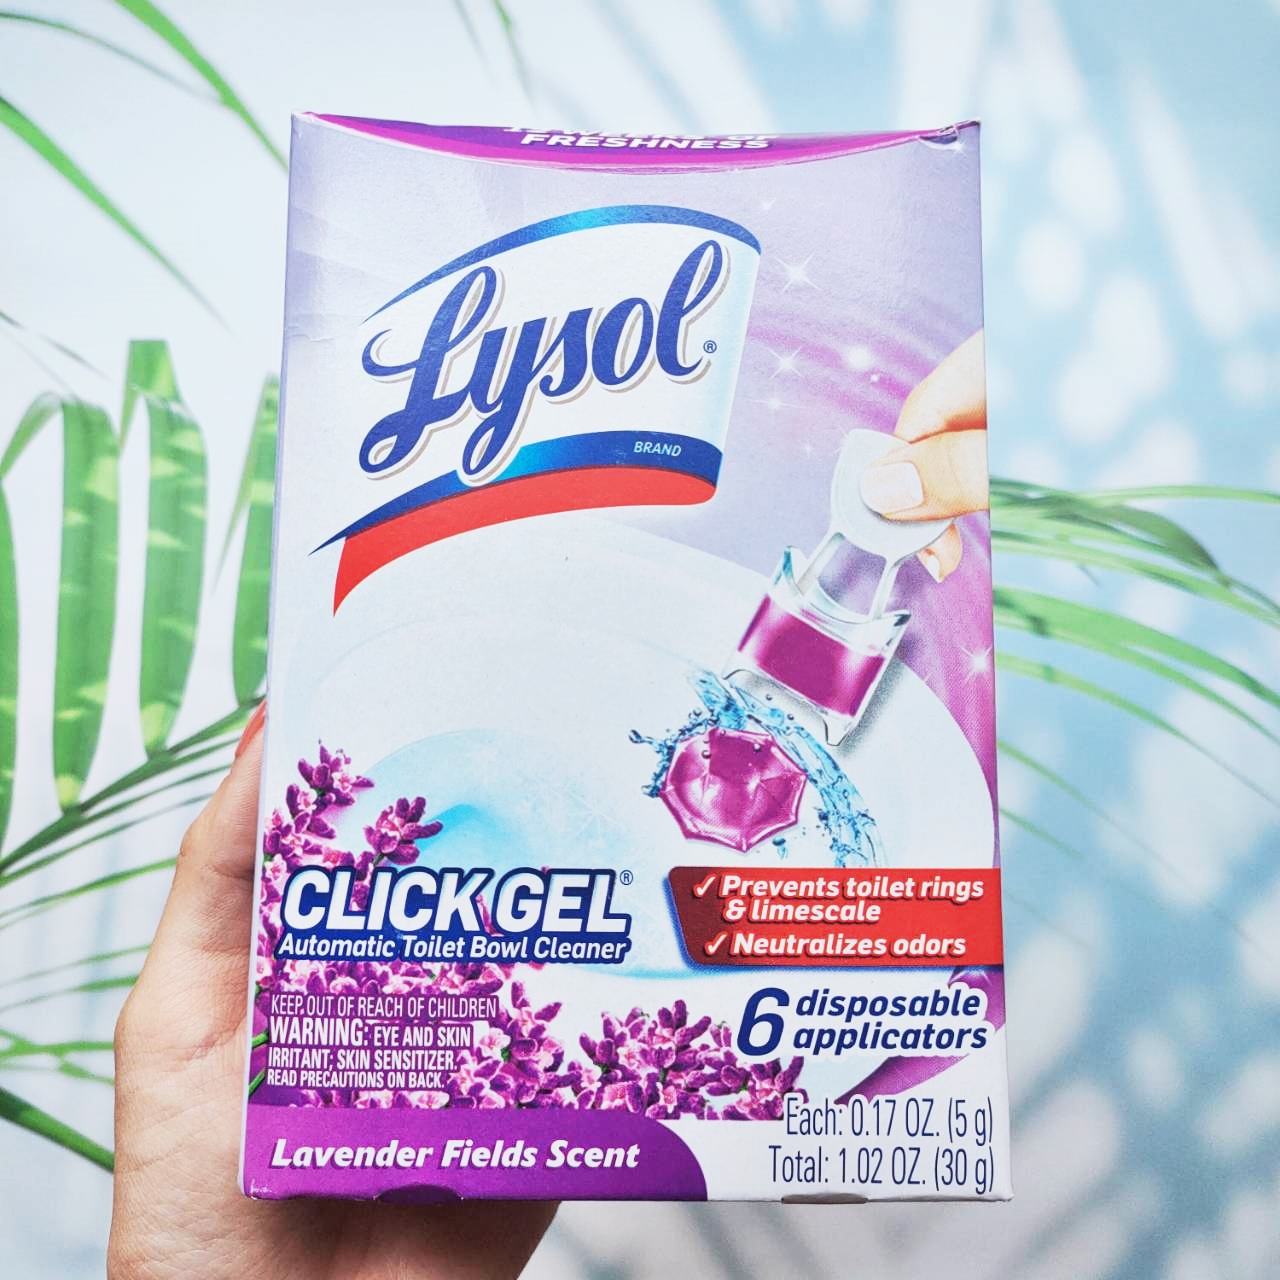 เจลดับกลิ่นและทำความสะอาดโถสุขภัณฑ์ กลิ่นลาเวนเดอร์ Click Gel Automatic Toilet Bowl Cleaner Lavender Fresh Scent 6 disposable applicators (Lysol®)